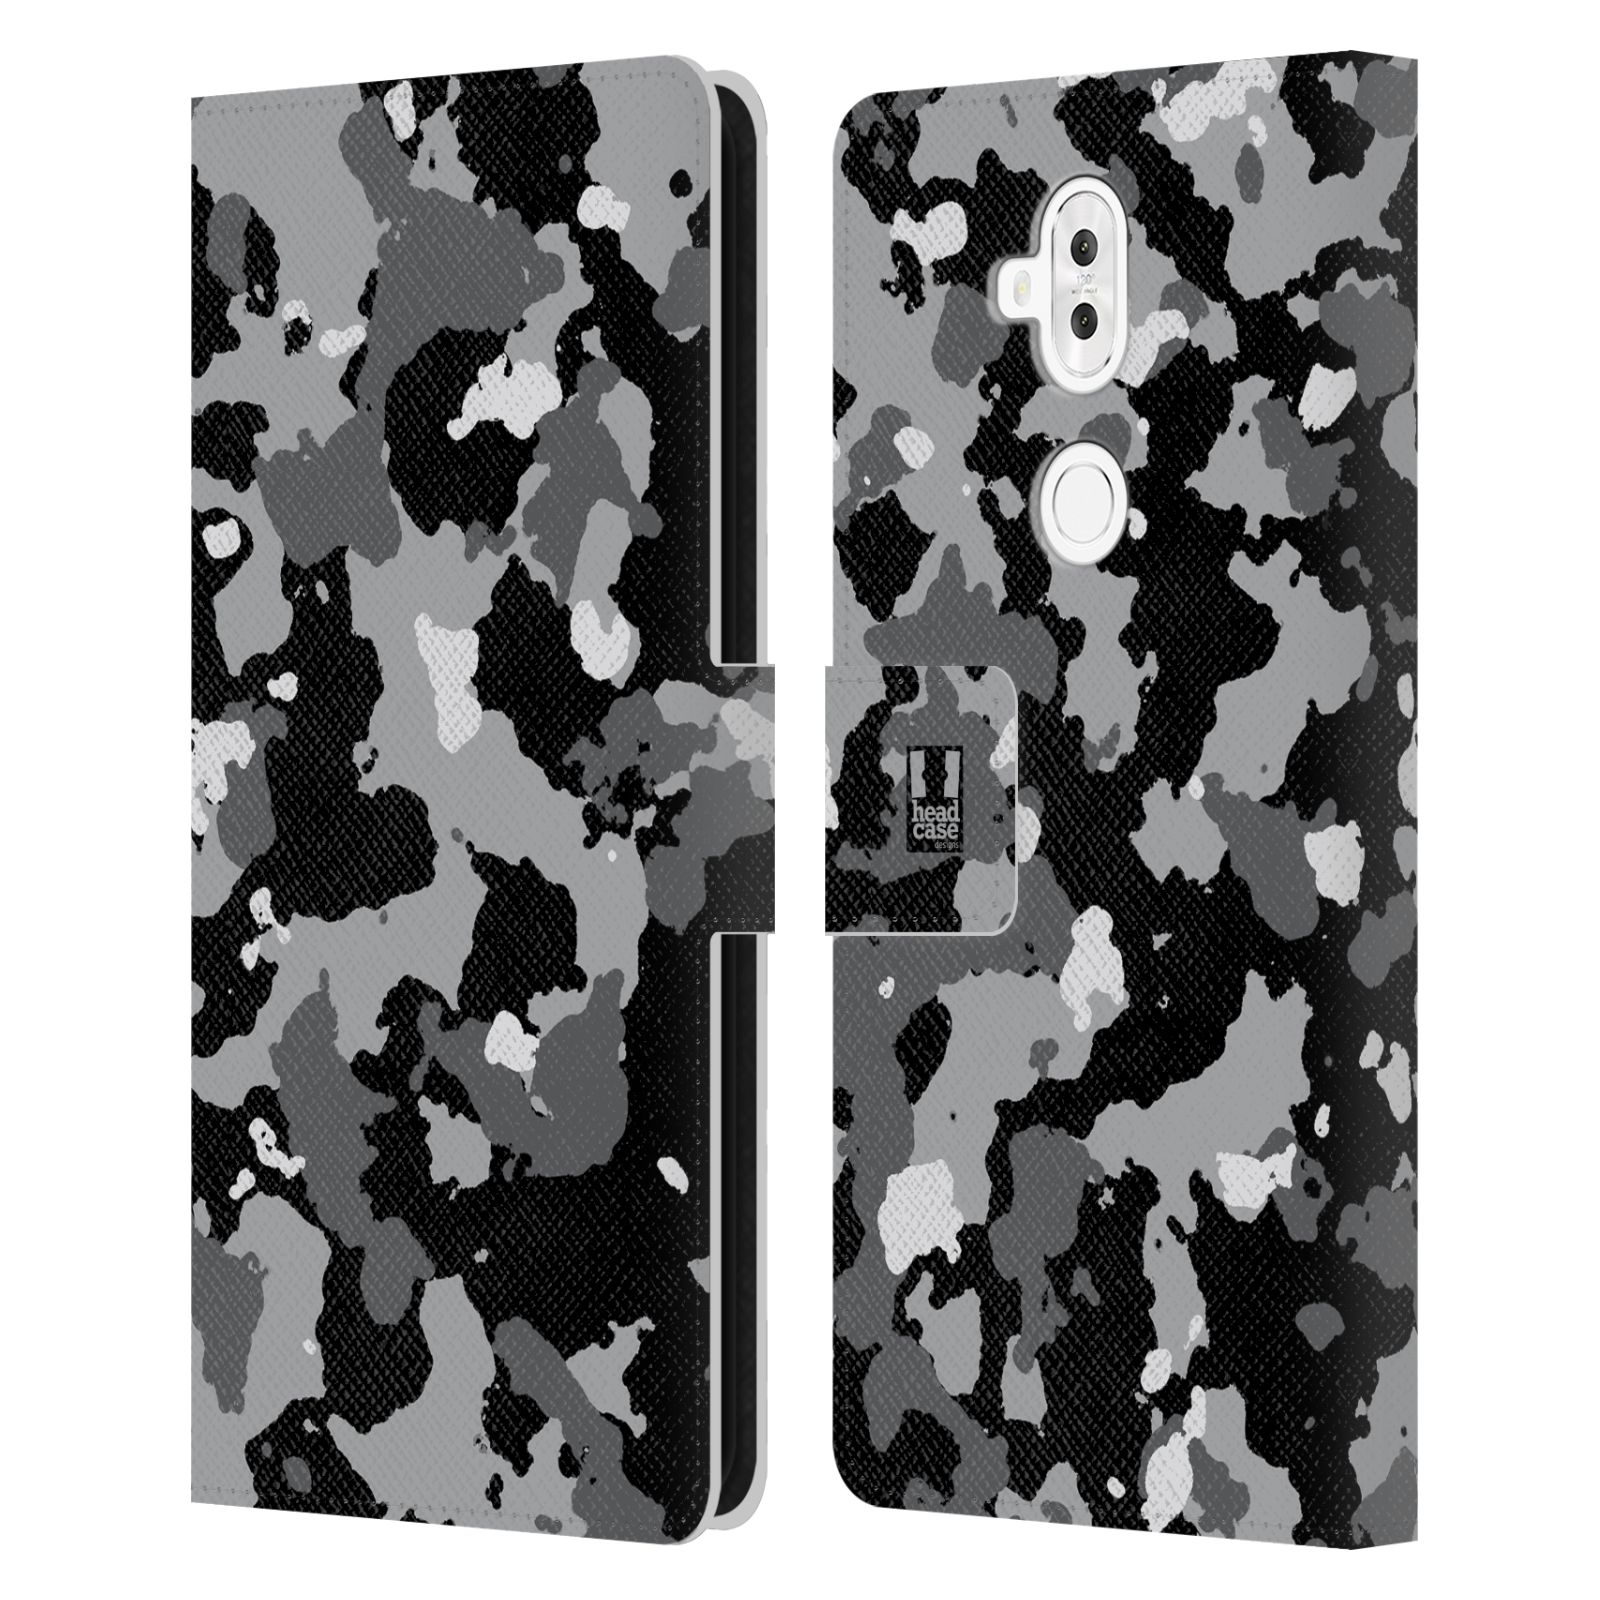 Pouzdro na mobil Asus Zenfone 5 ZC600KL - Head Case - kamuflaž černá a šedá